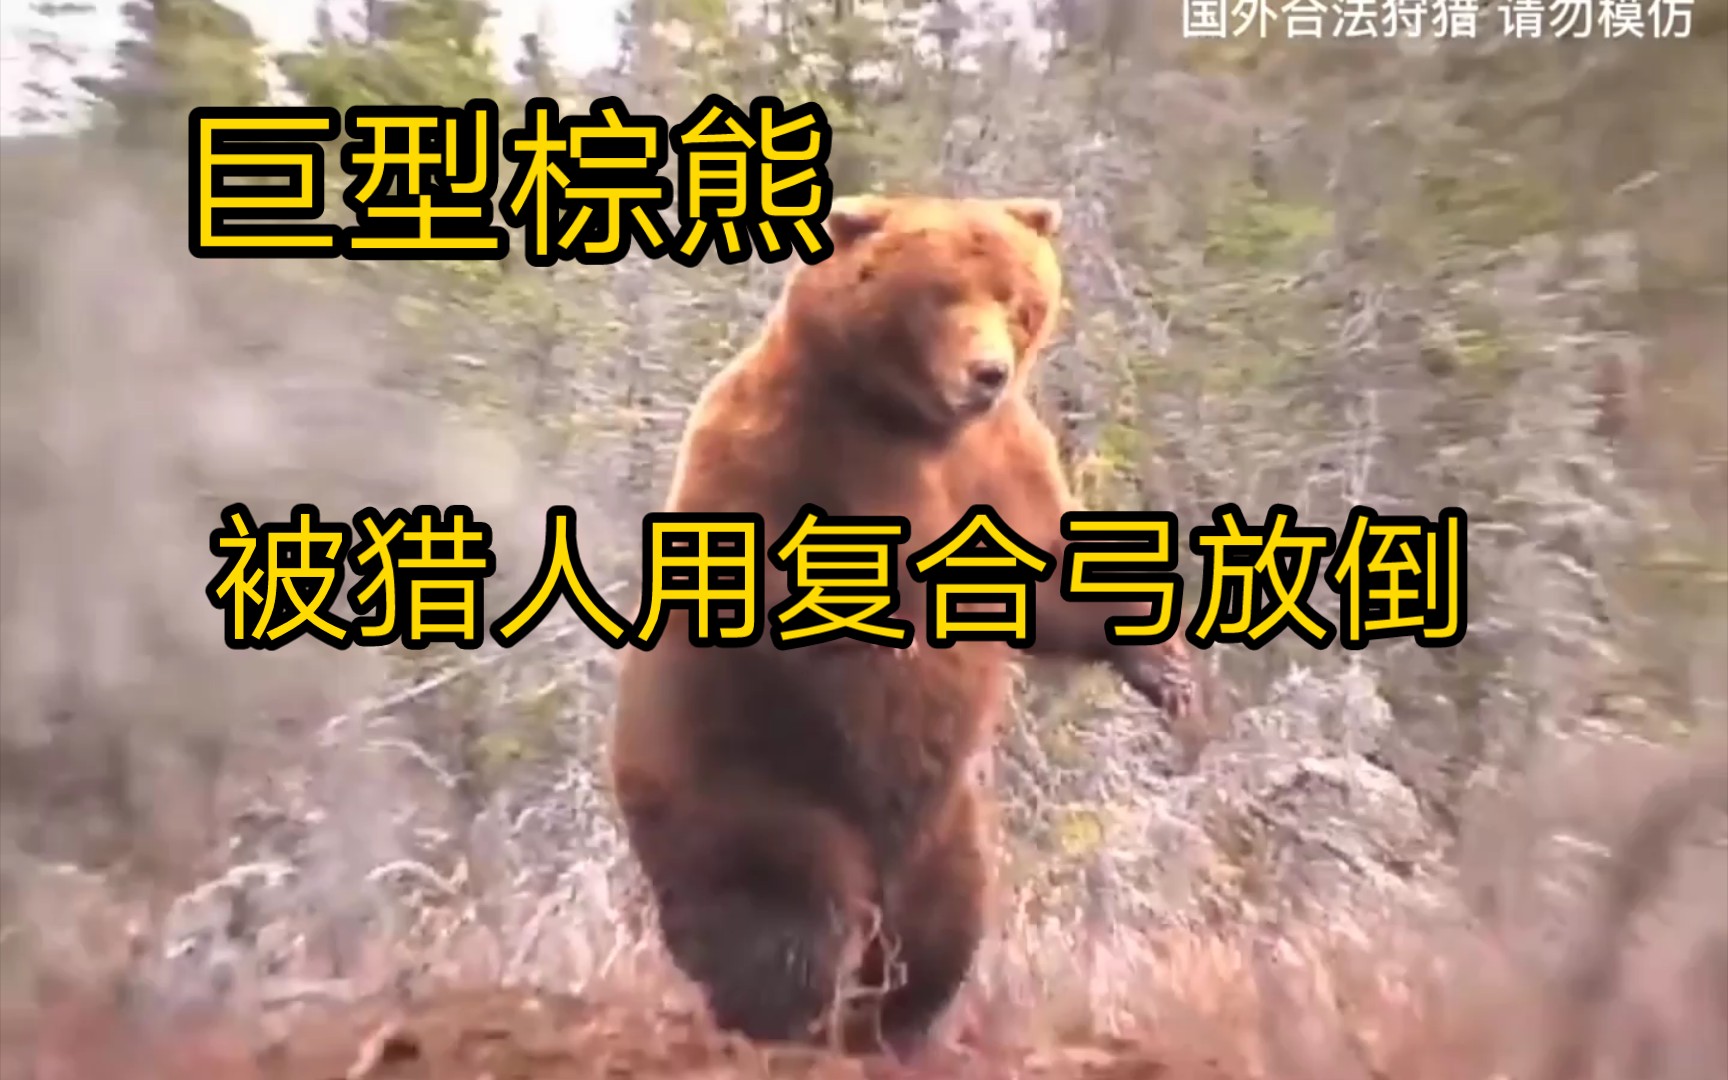 一头上千斤的巨型棕熊 被猎人用复合弓放倒